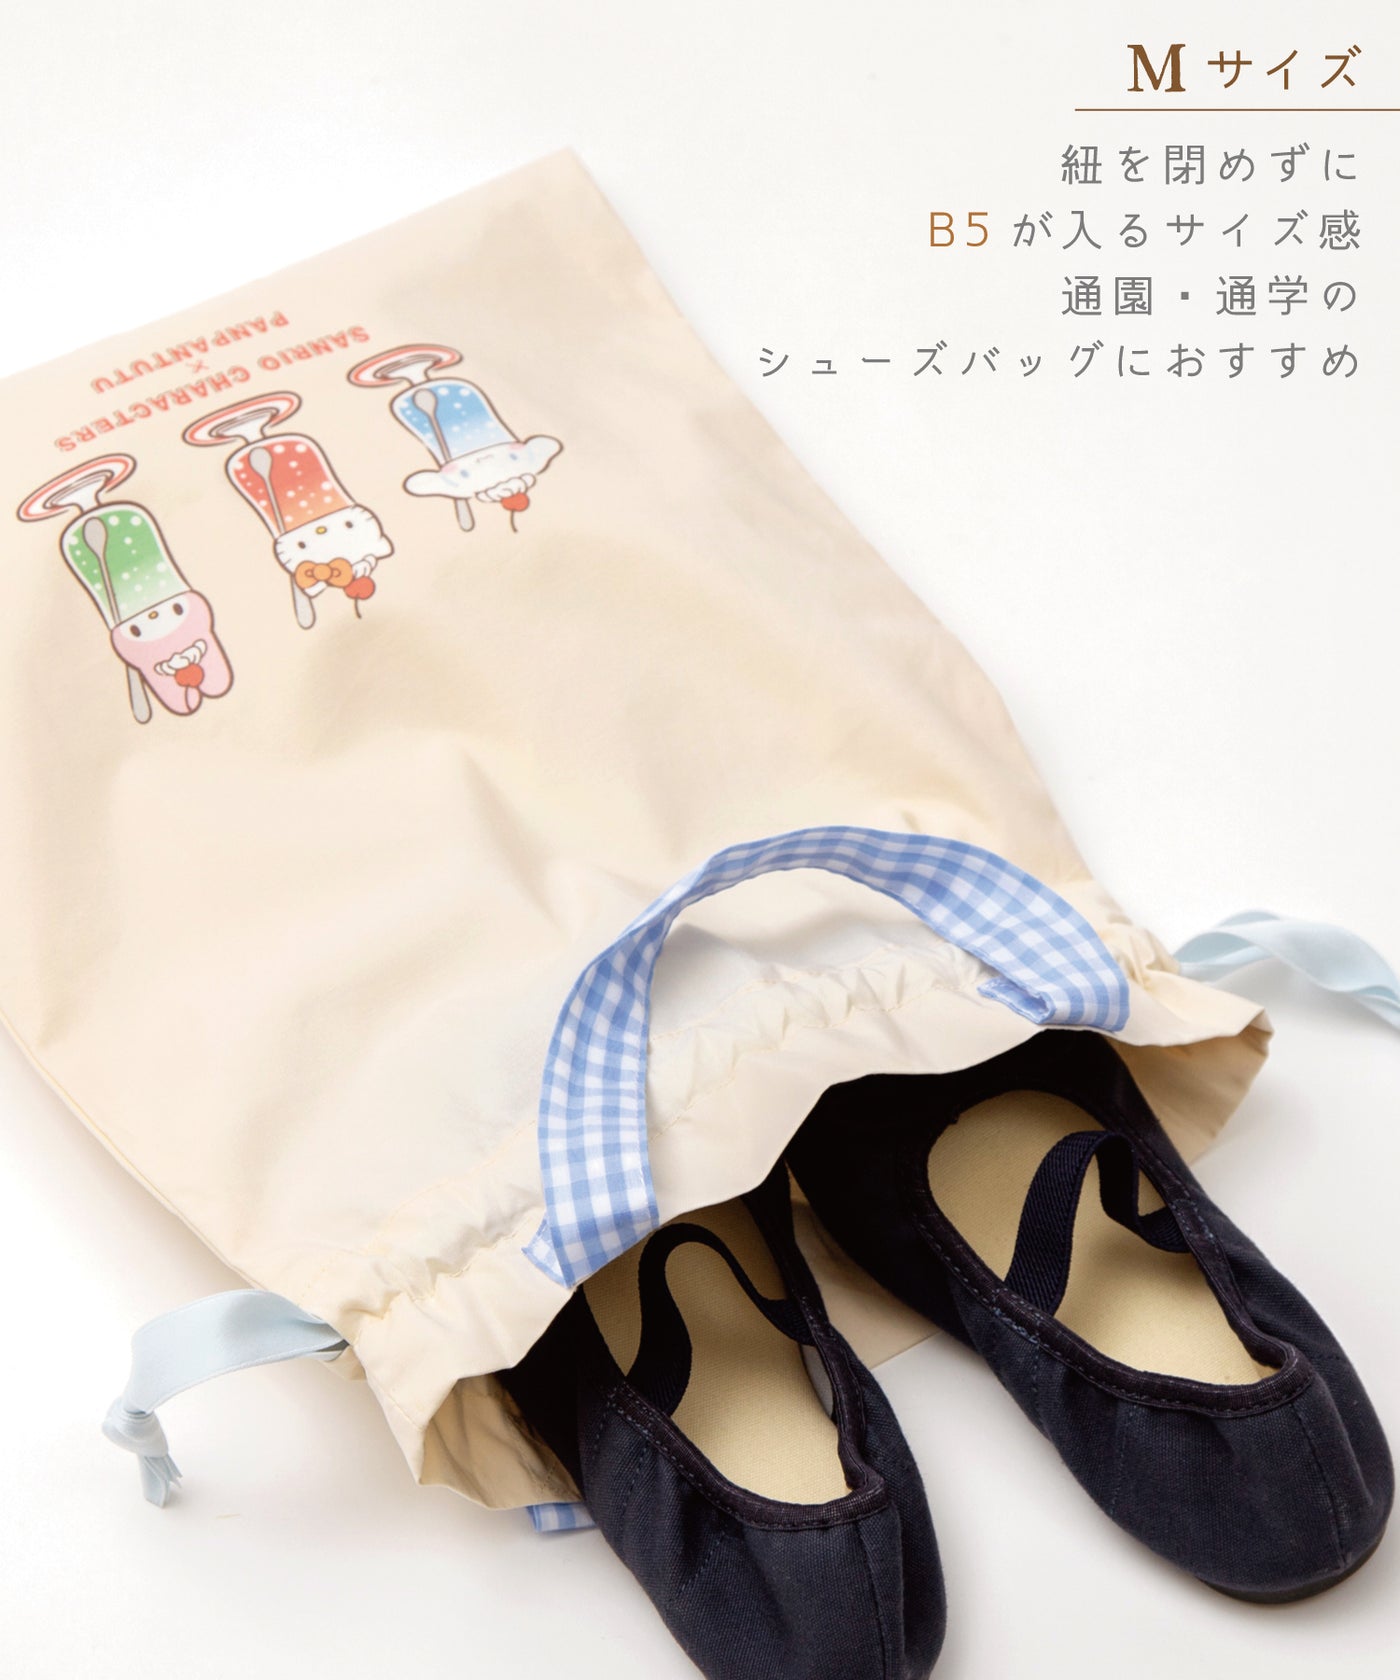 【サンリオキャラクターズ】巾着トートバッグ/レトロクリームソーダ